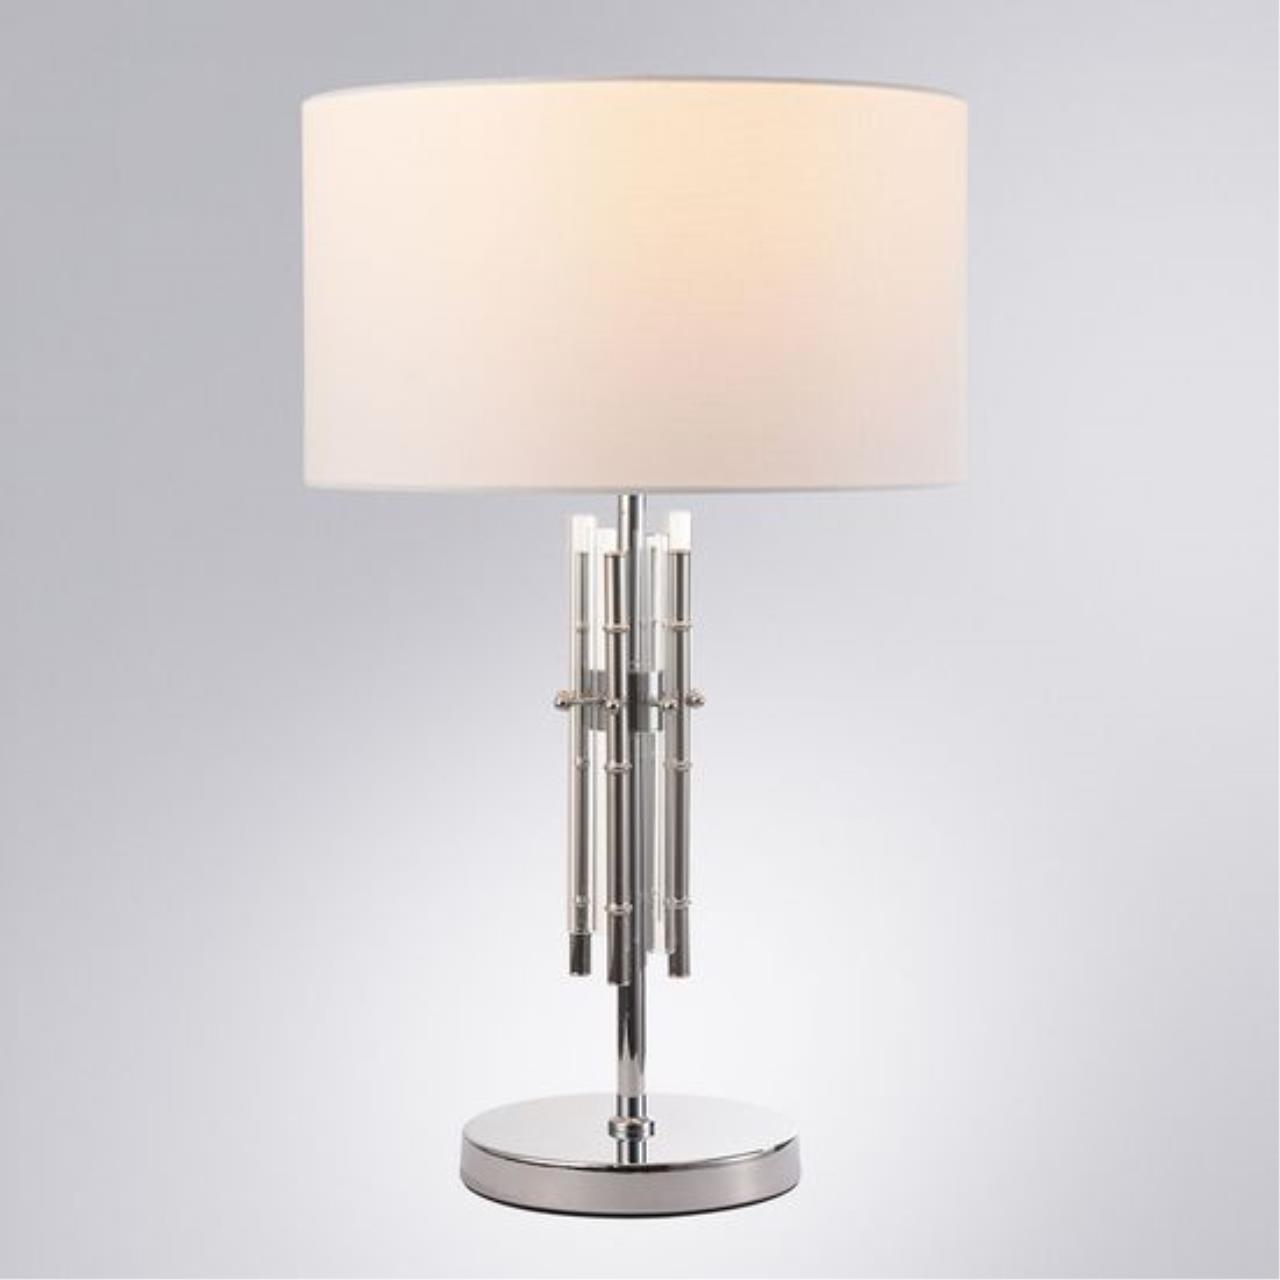 Интерьерная настольная лампа Arte lamp A4097LT-1CC